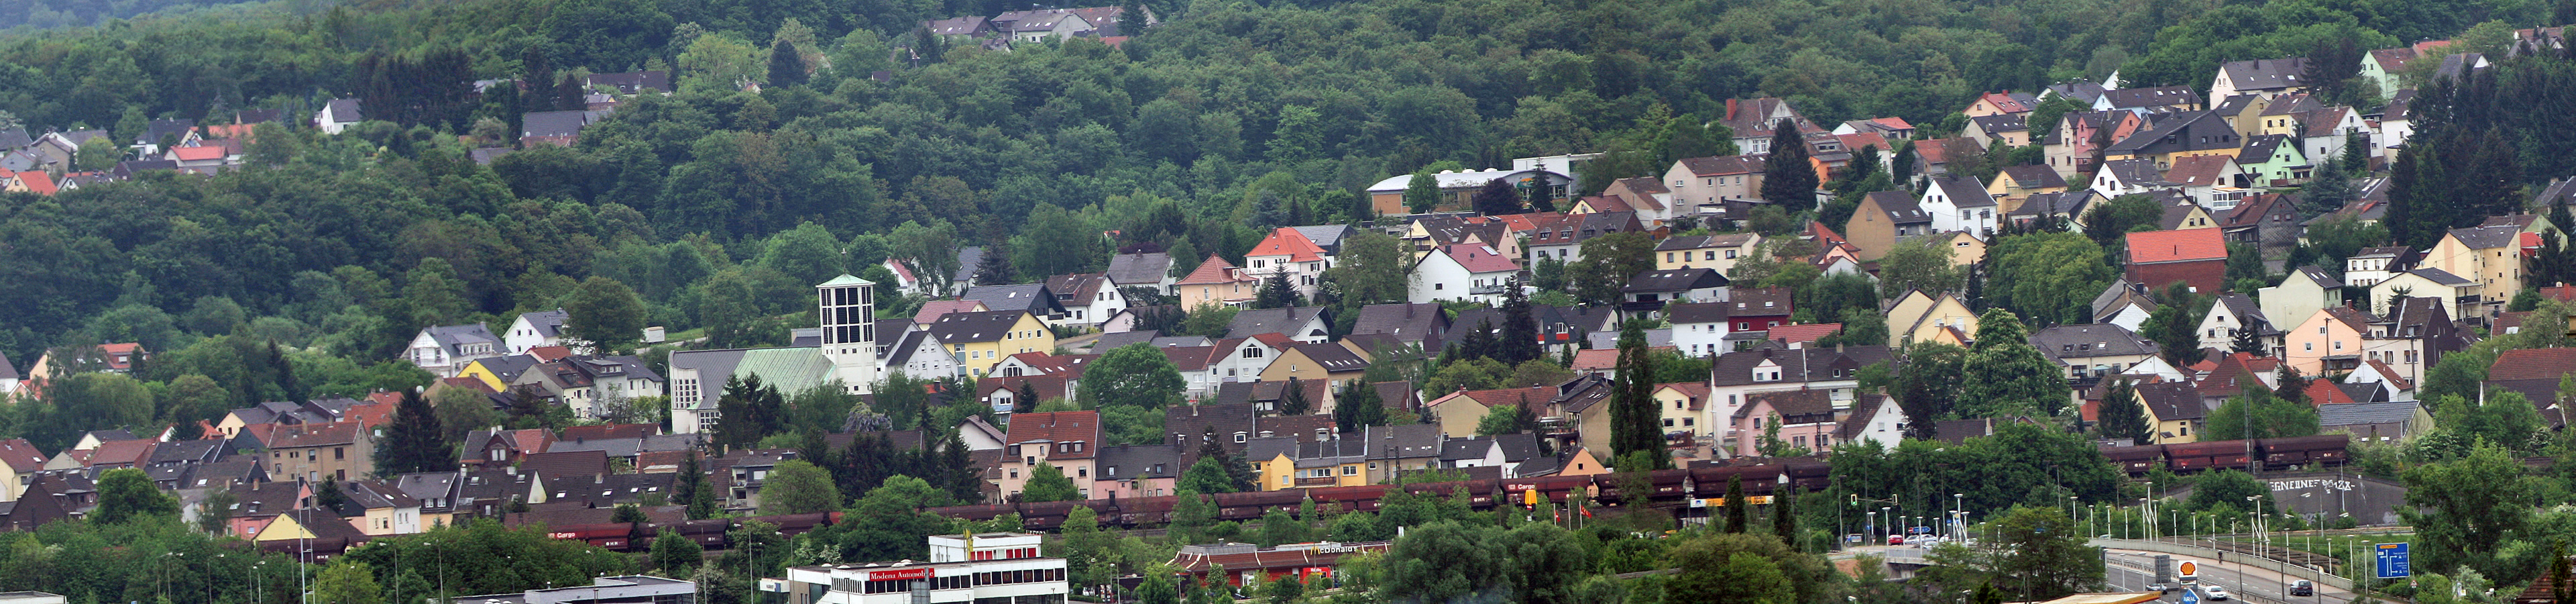 Blick auf Fürstenhausen